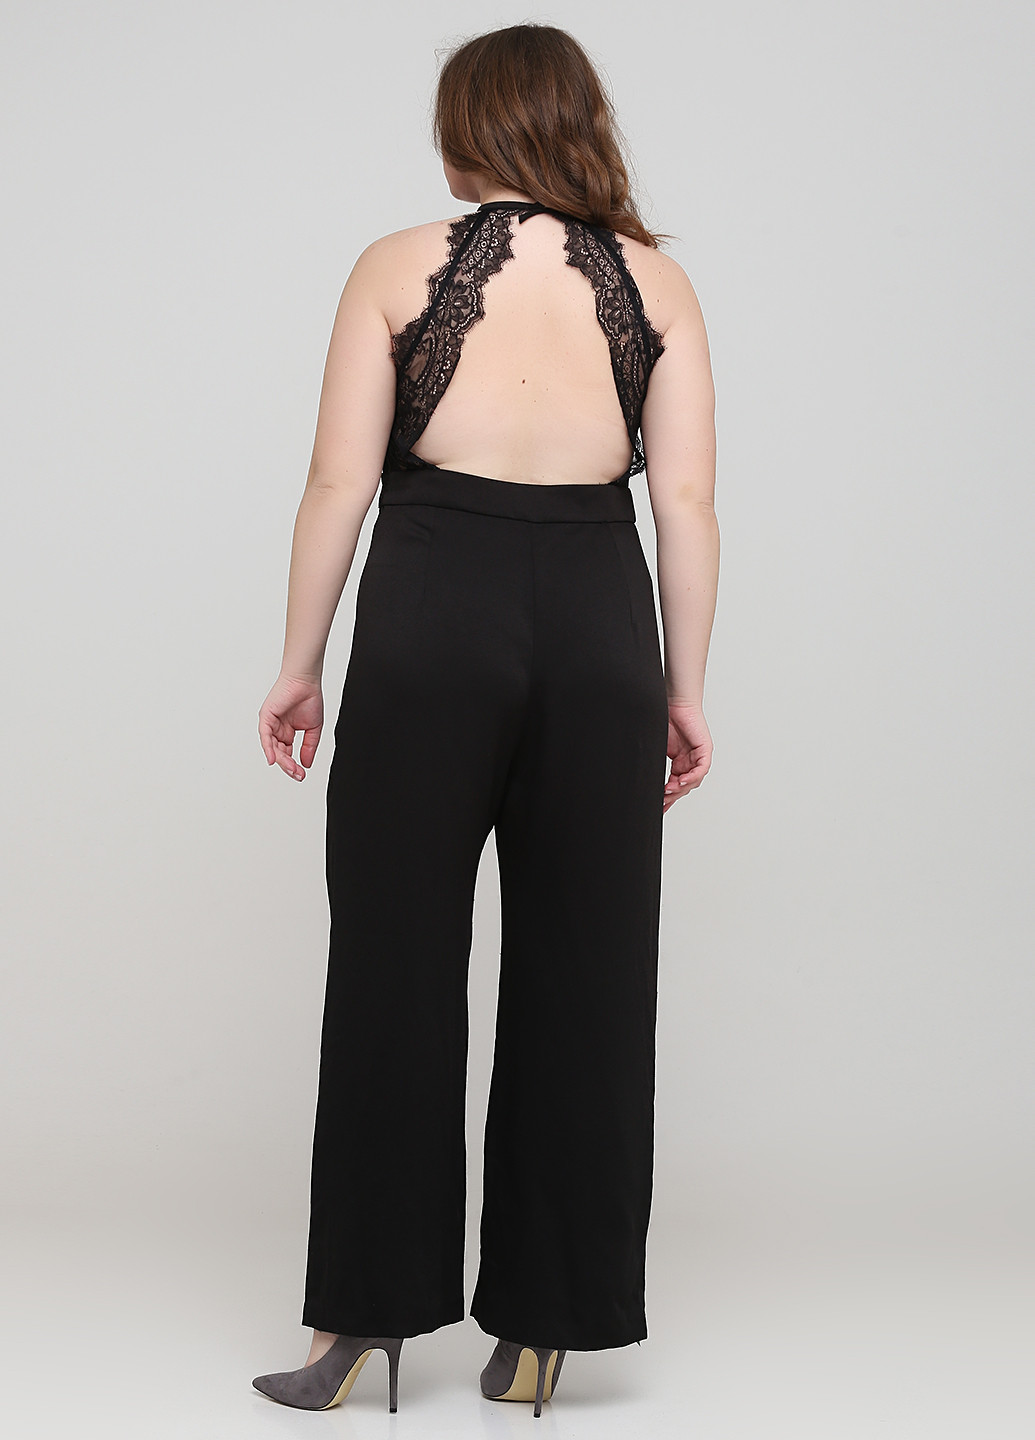 Комбінезон H&M комбінезон-брюки однотонний чорний вечірній віскоза